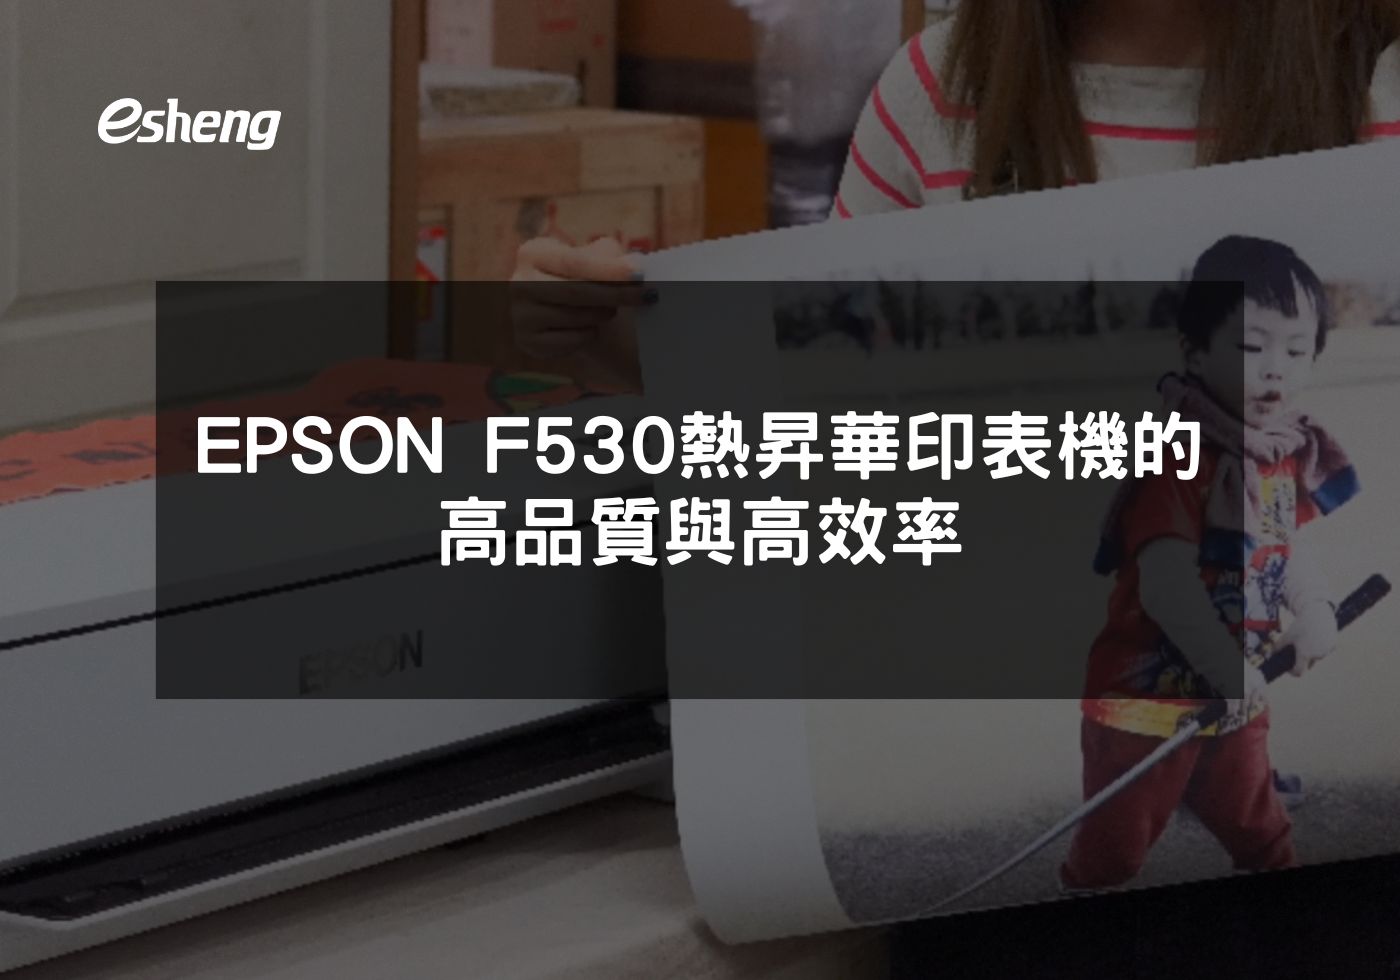 閱讀更多文章 EPSON F530熱昇華印表機的高品質與高效率